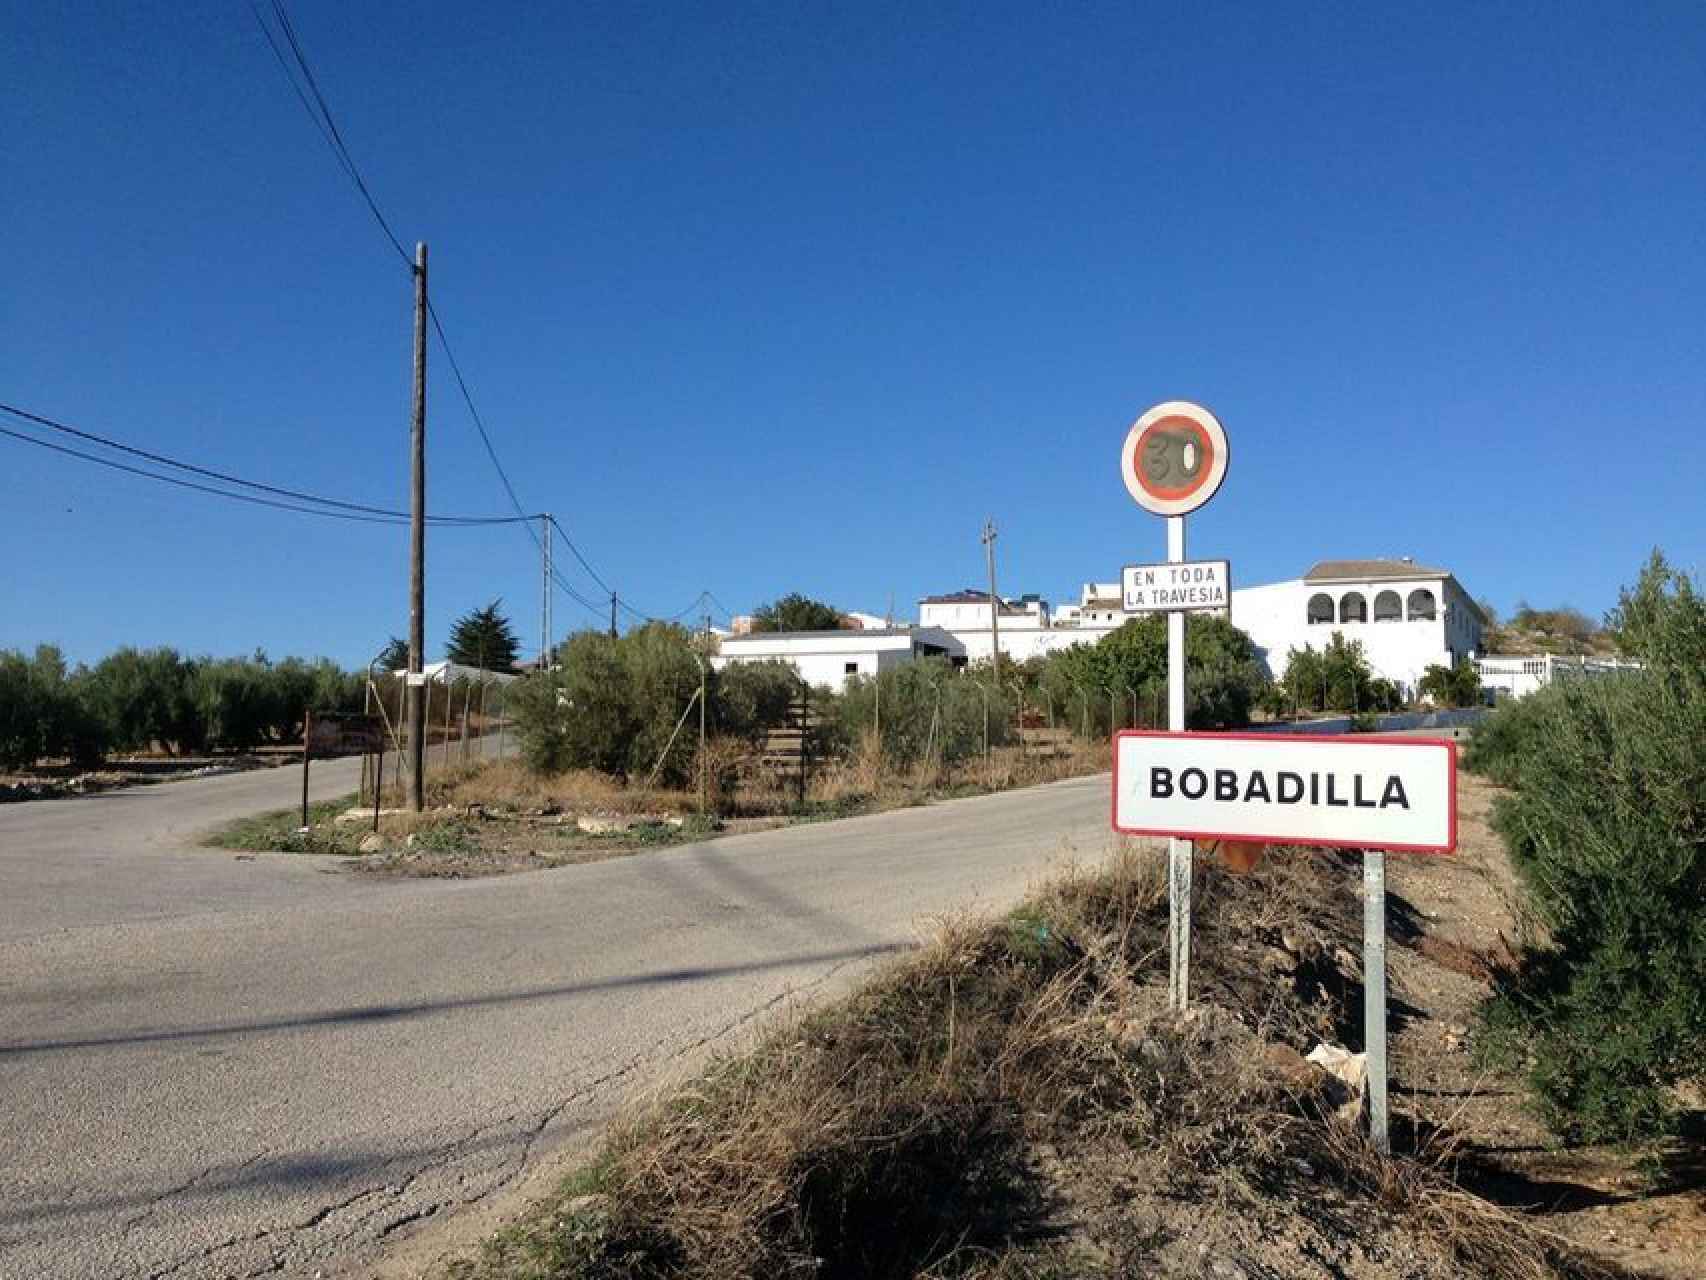 Bobadilla es un pueblo jiennense de 1.000 habitantes rodeado por inmensas extensiones de olivares.